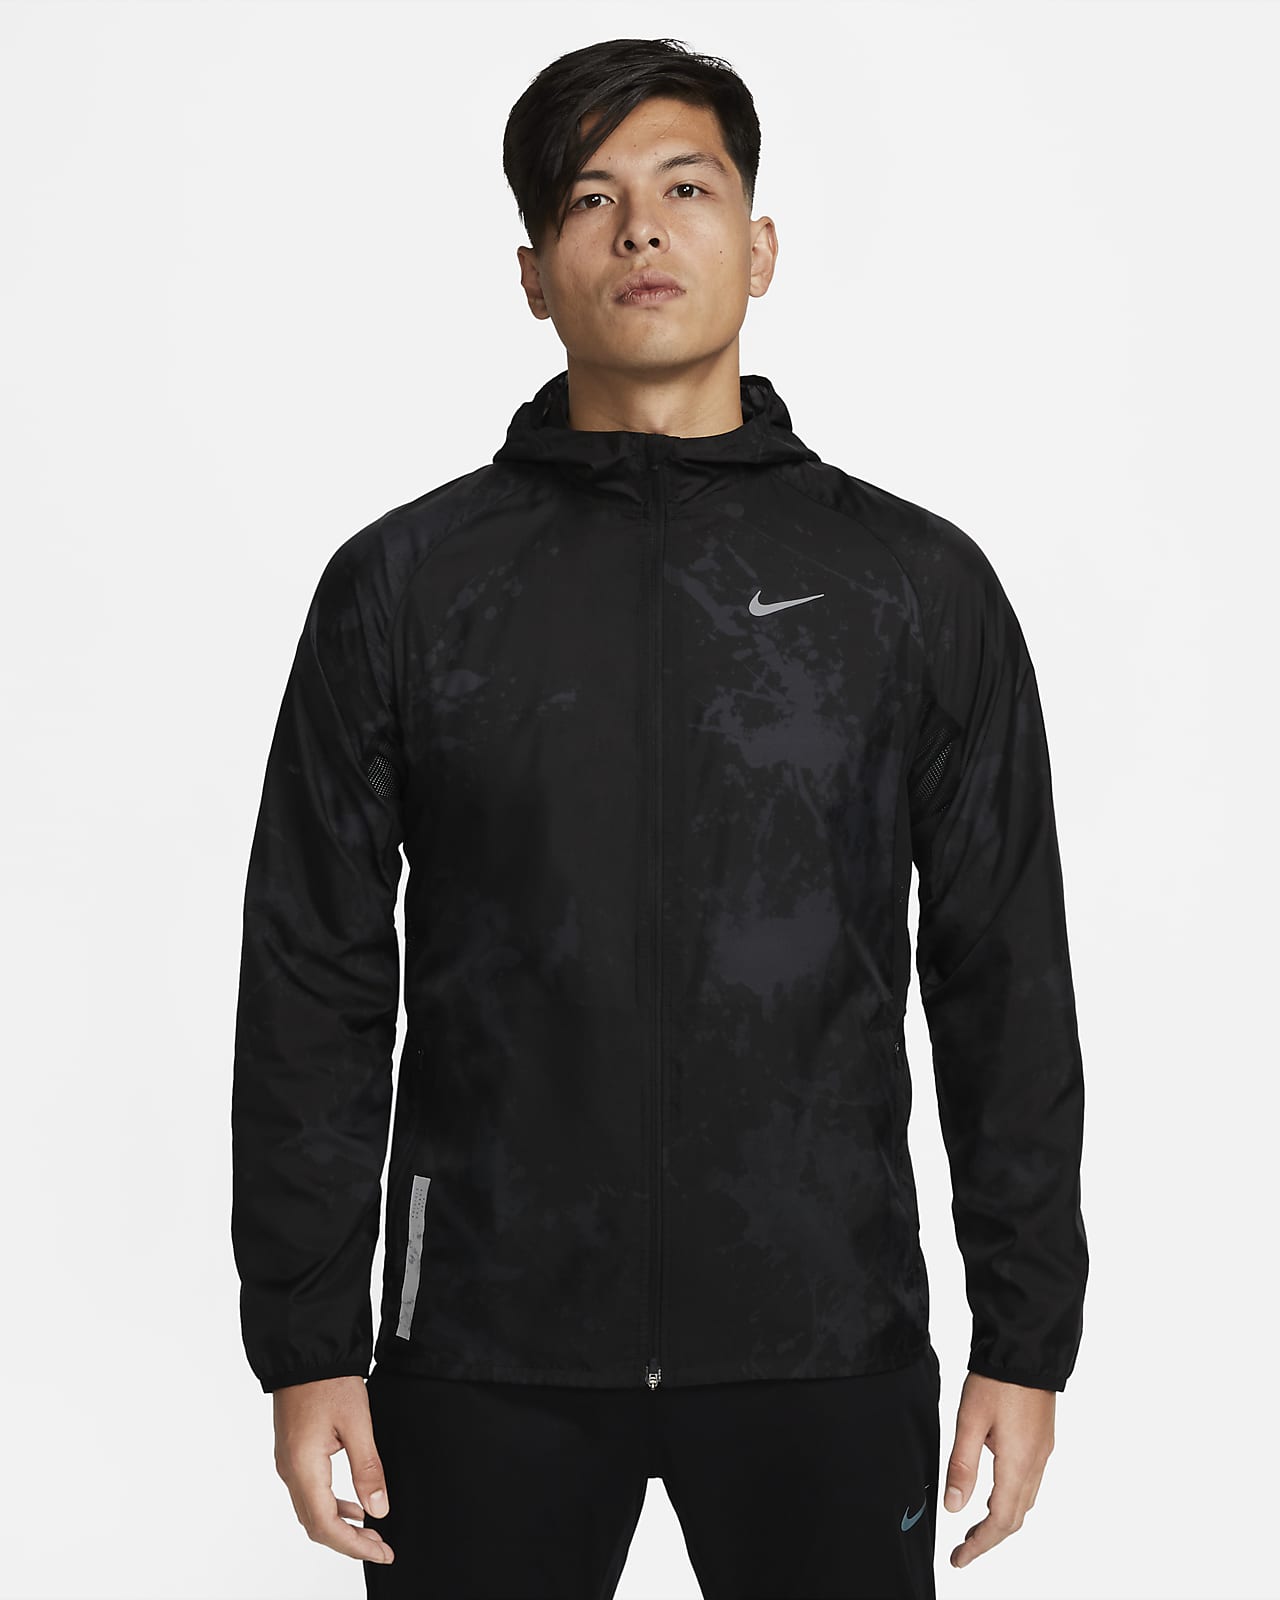 Joseph Banks atleet strijd Nike Repel Run Division Men's Running Jacket. Nike.com